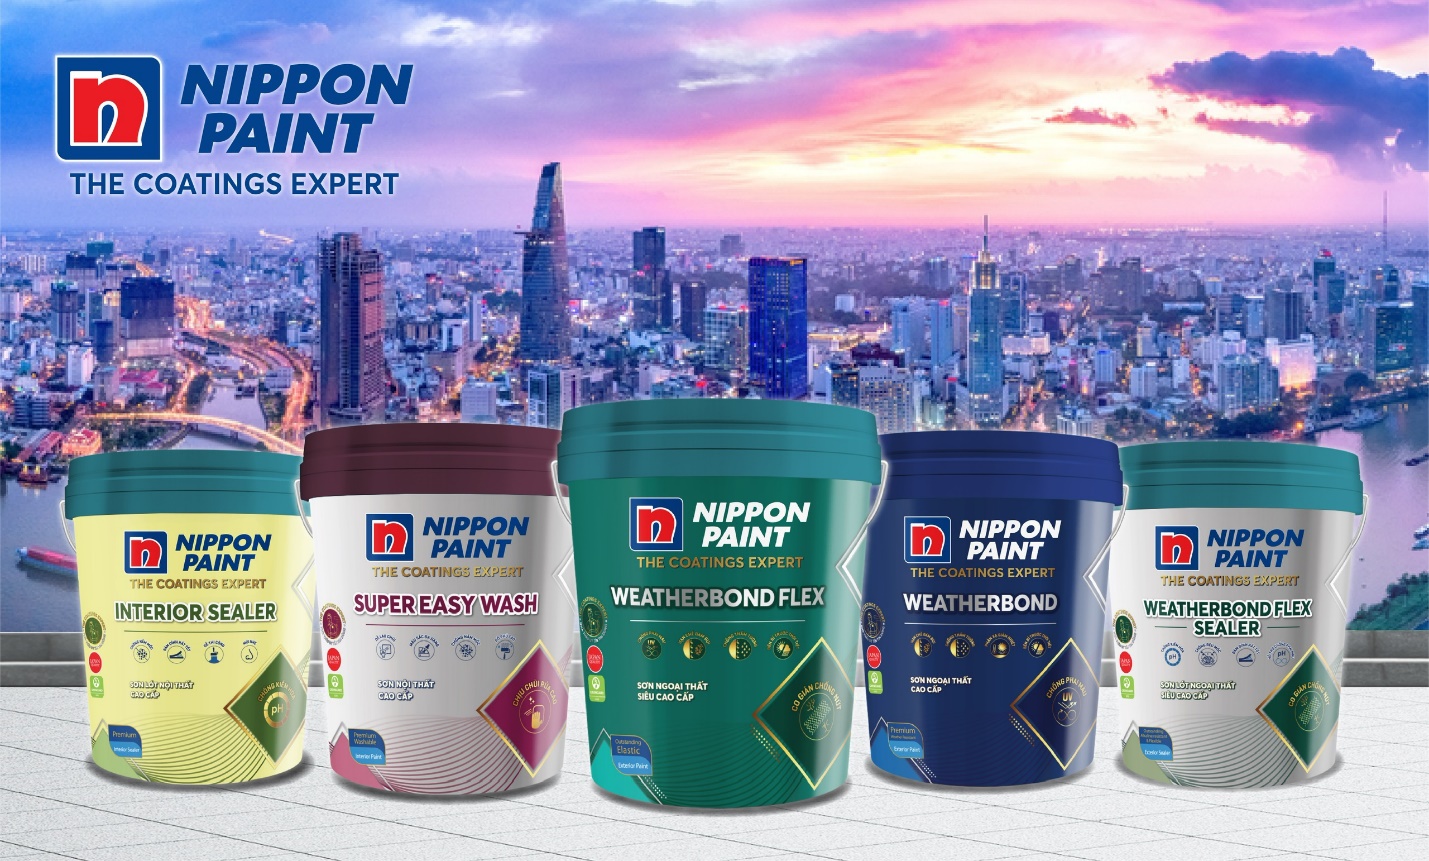 Nippon Paint - The Coatings Expert chính thức giới thiệu bao bì mới tại Việt Nam - Nhịp sống kinh tế Việt Nam & Thế giới